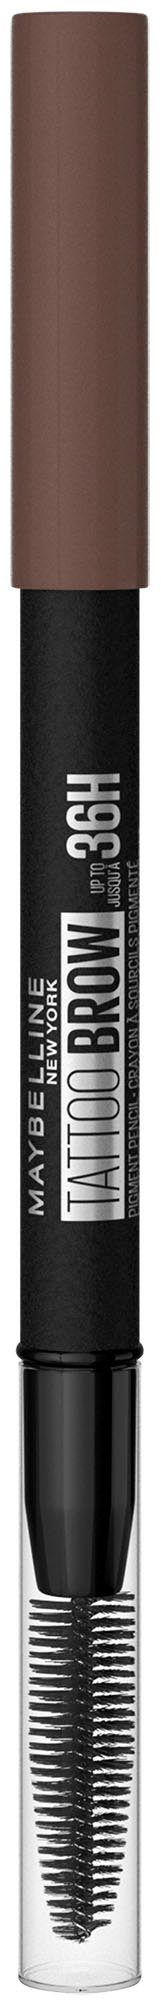 MAYBELLINE NEW YORK Augenbrauen-Stift Tattoo 36H, Formel, Deep Brown Bürste, Brow mit wasserfeste 7 Augen-Make-Up